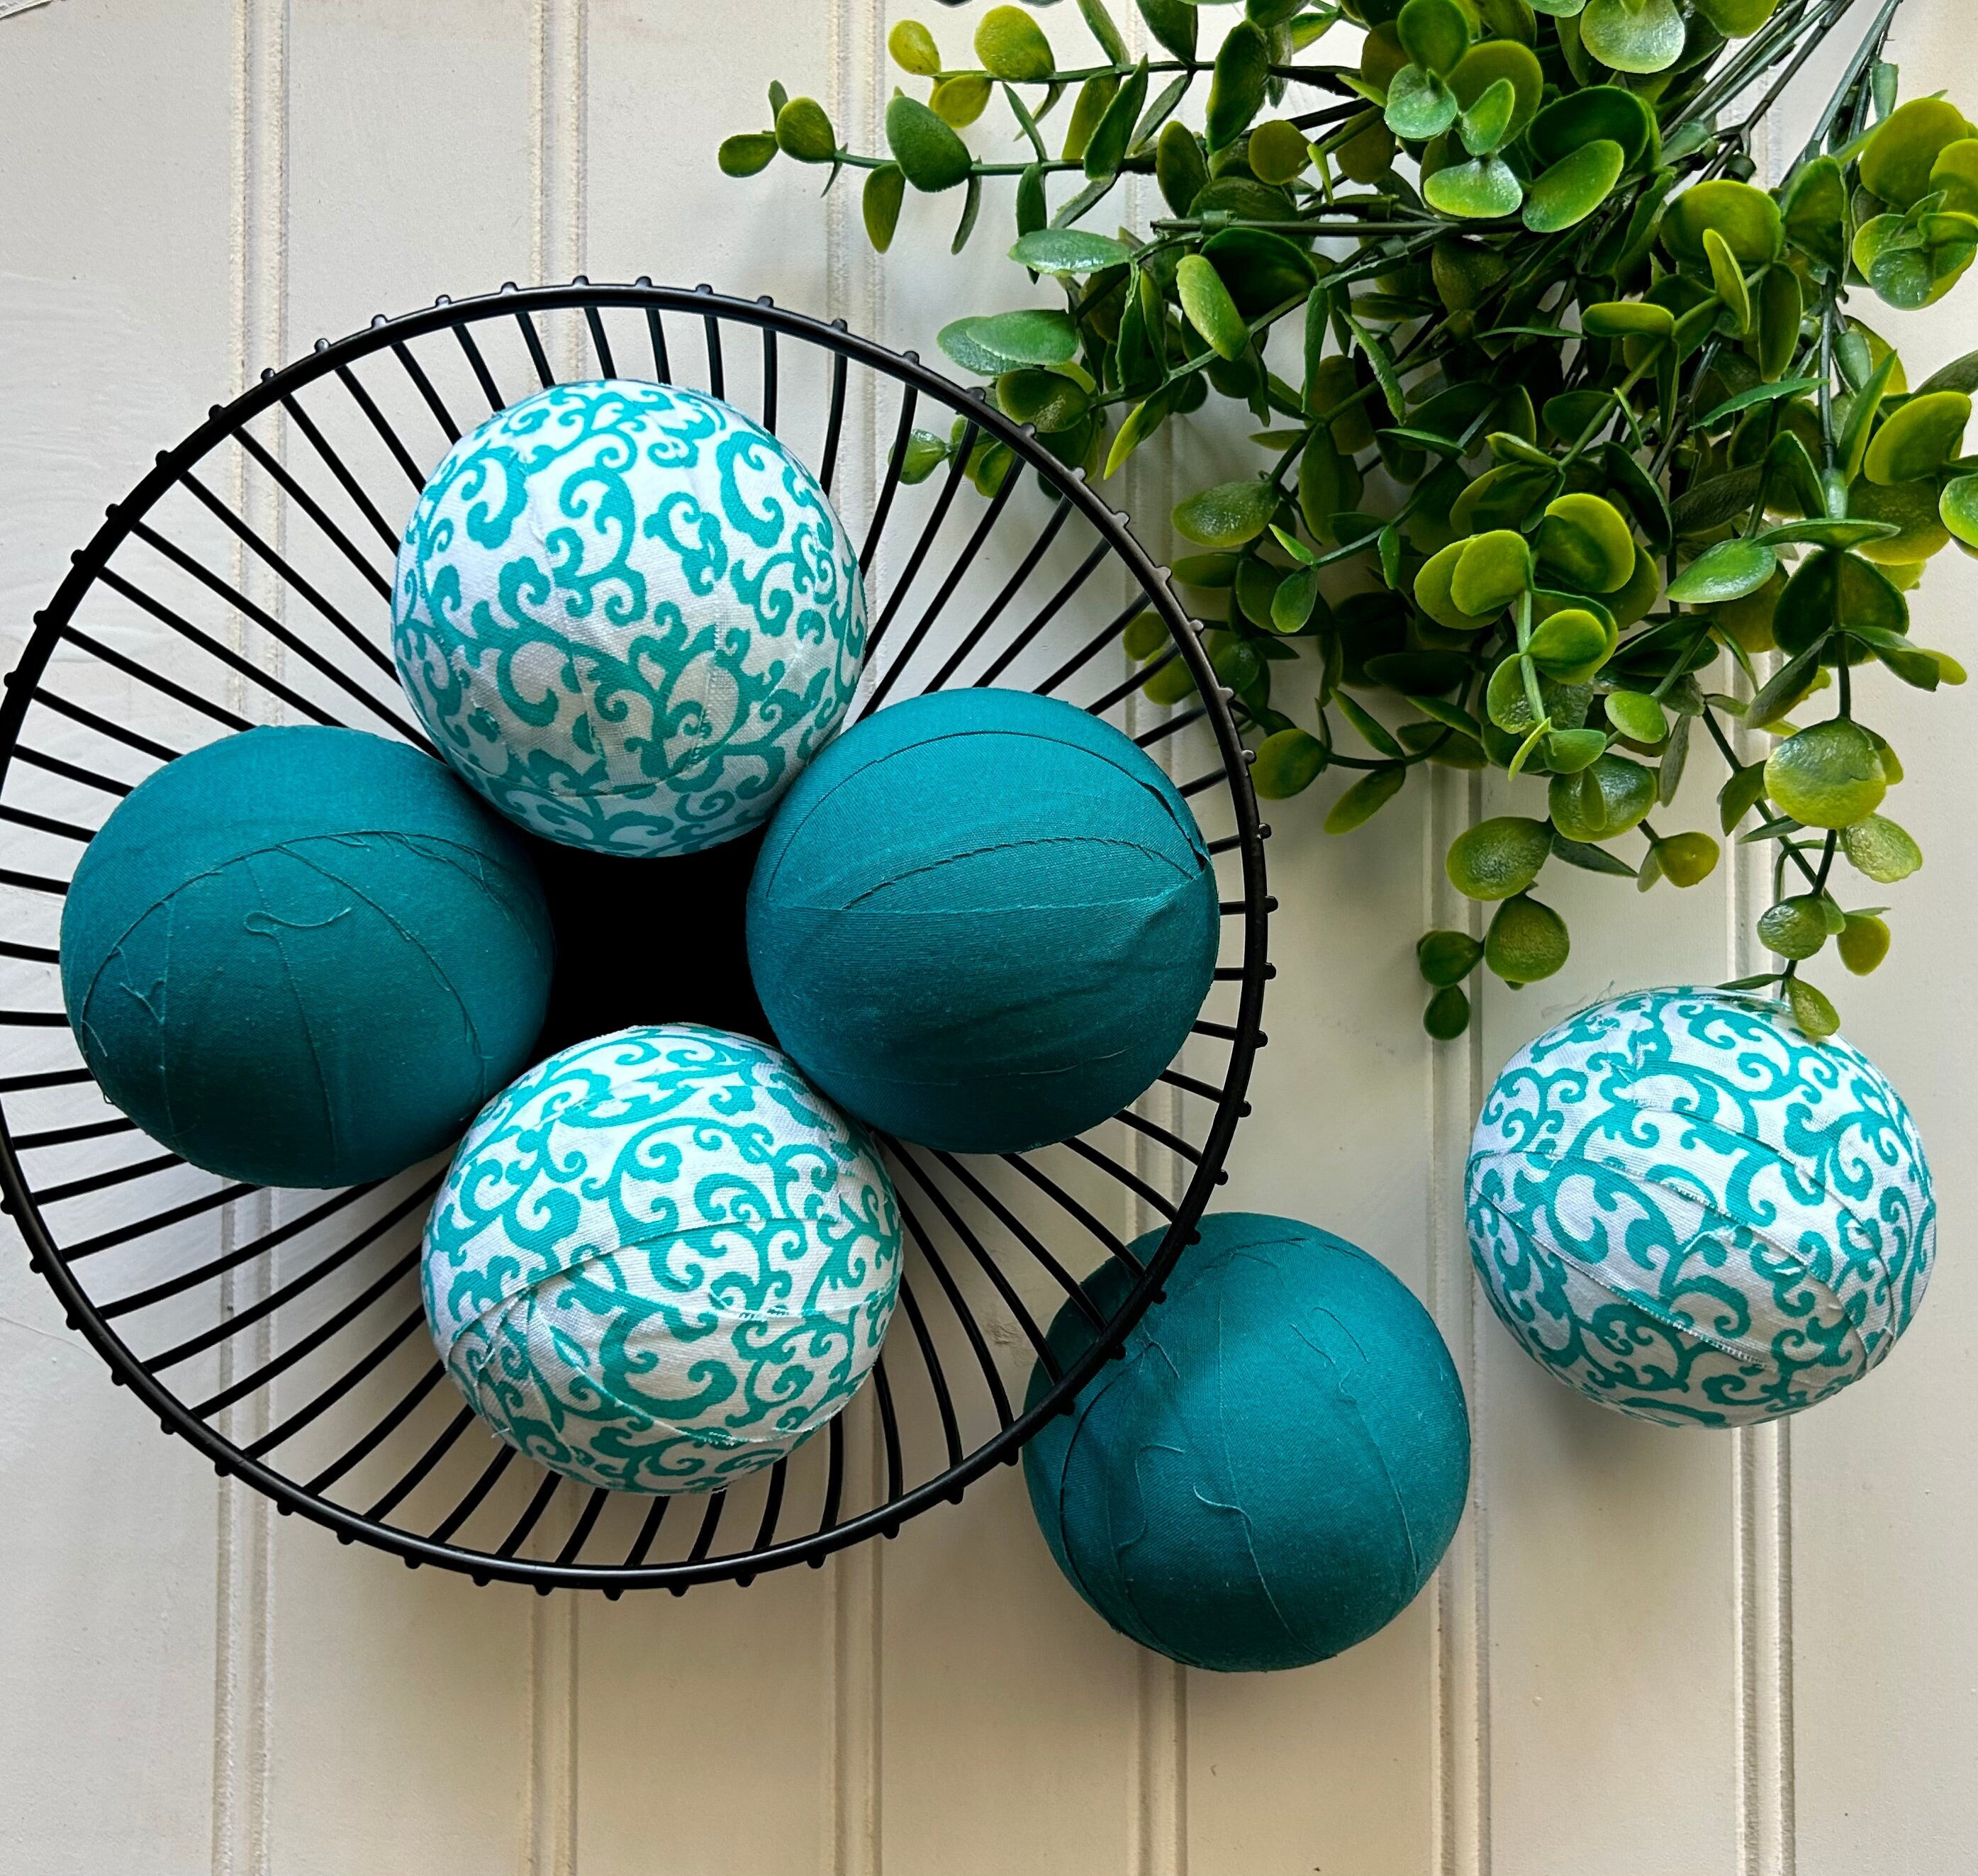 Ballons de baudruche turquoise 27 cm - Dragées Anahita